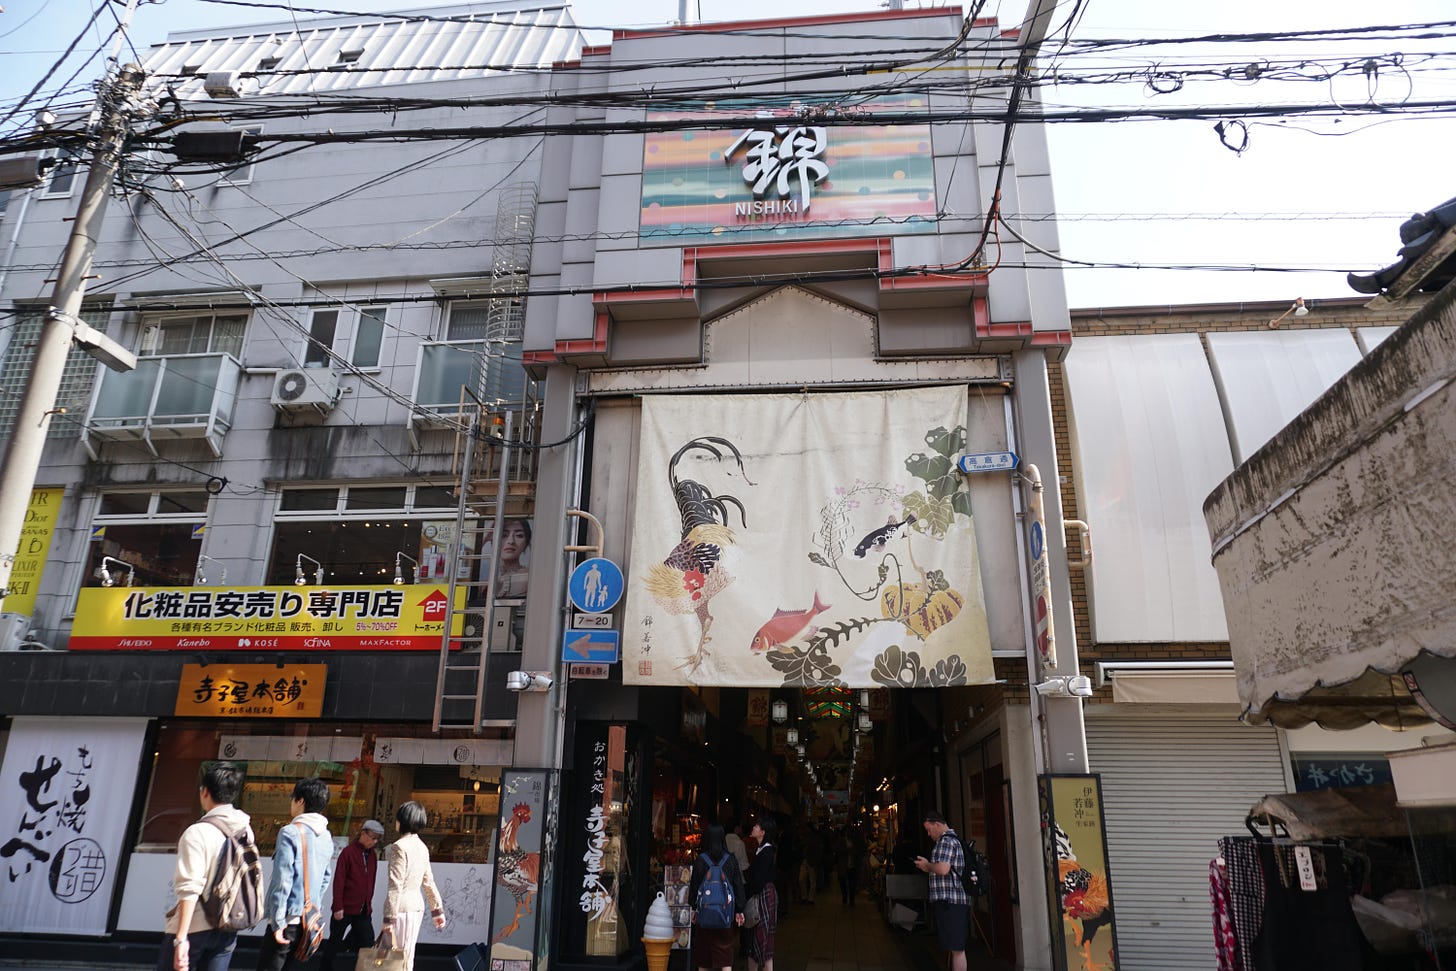 Nishiki Market entrance